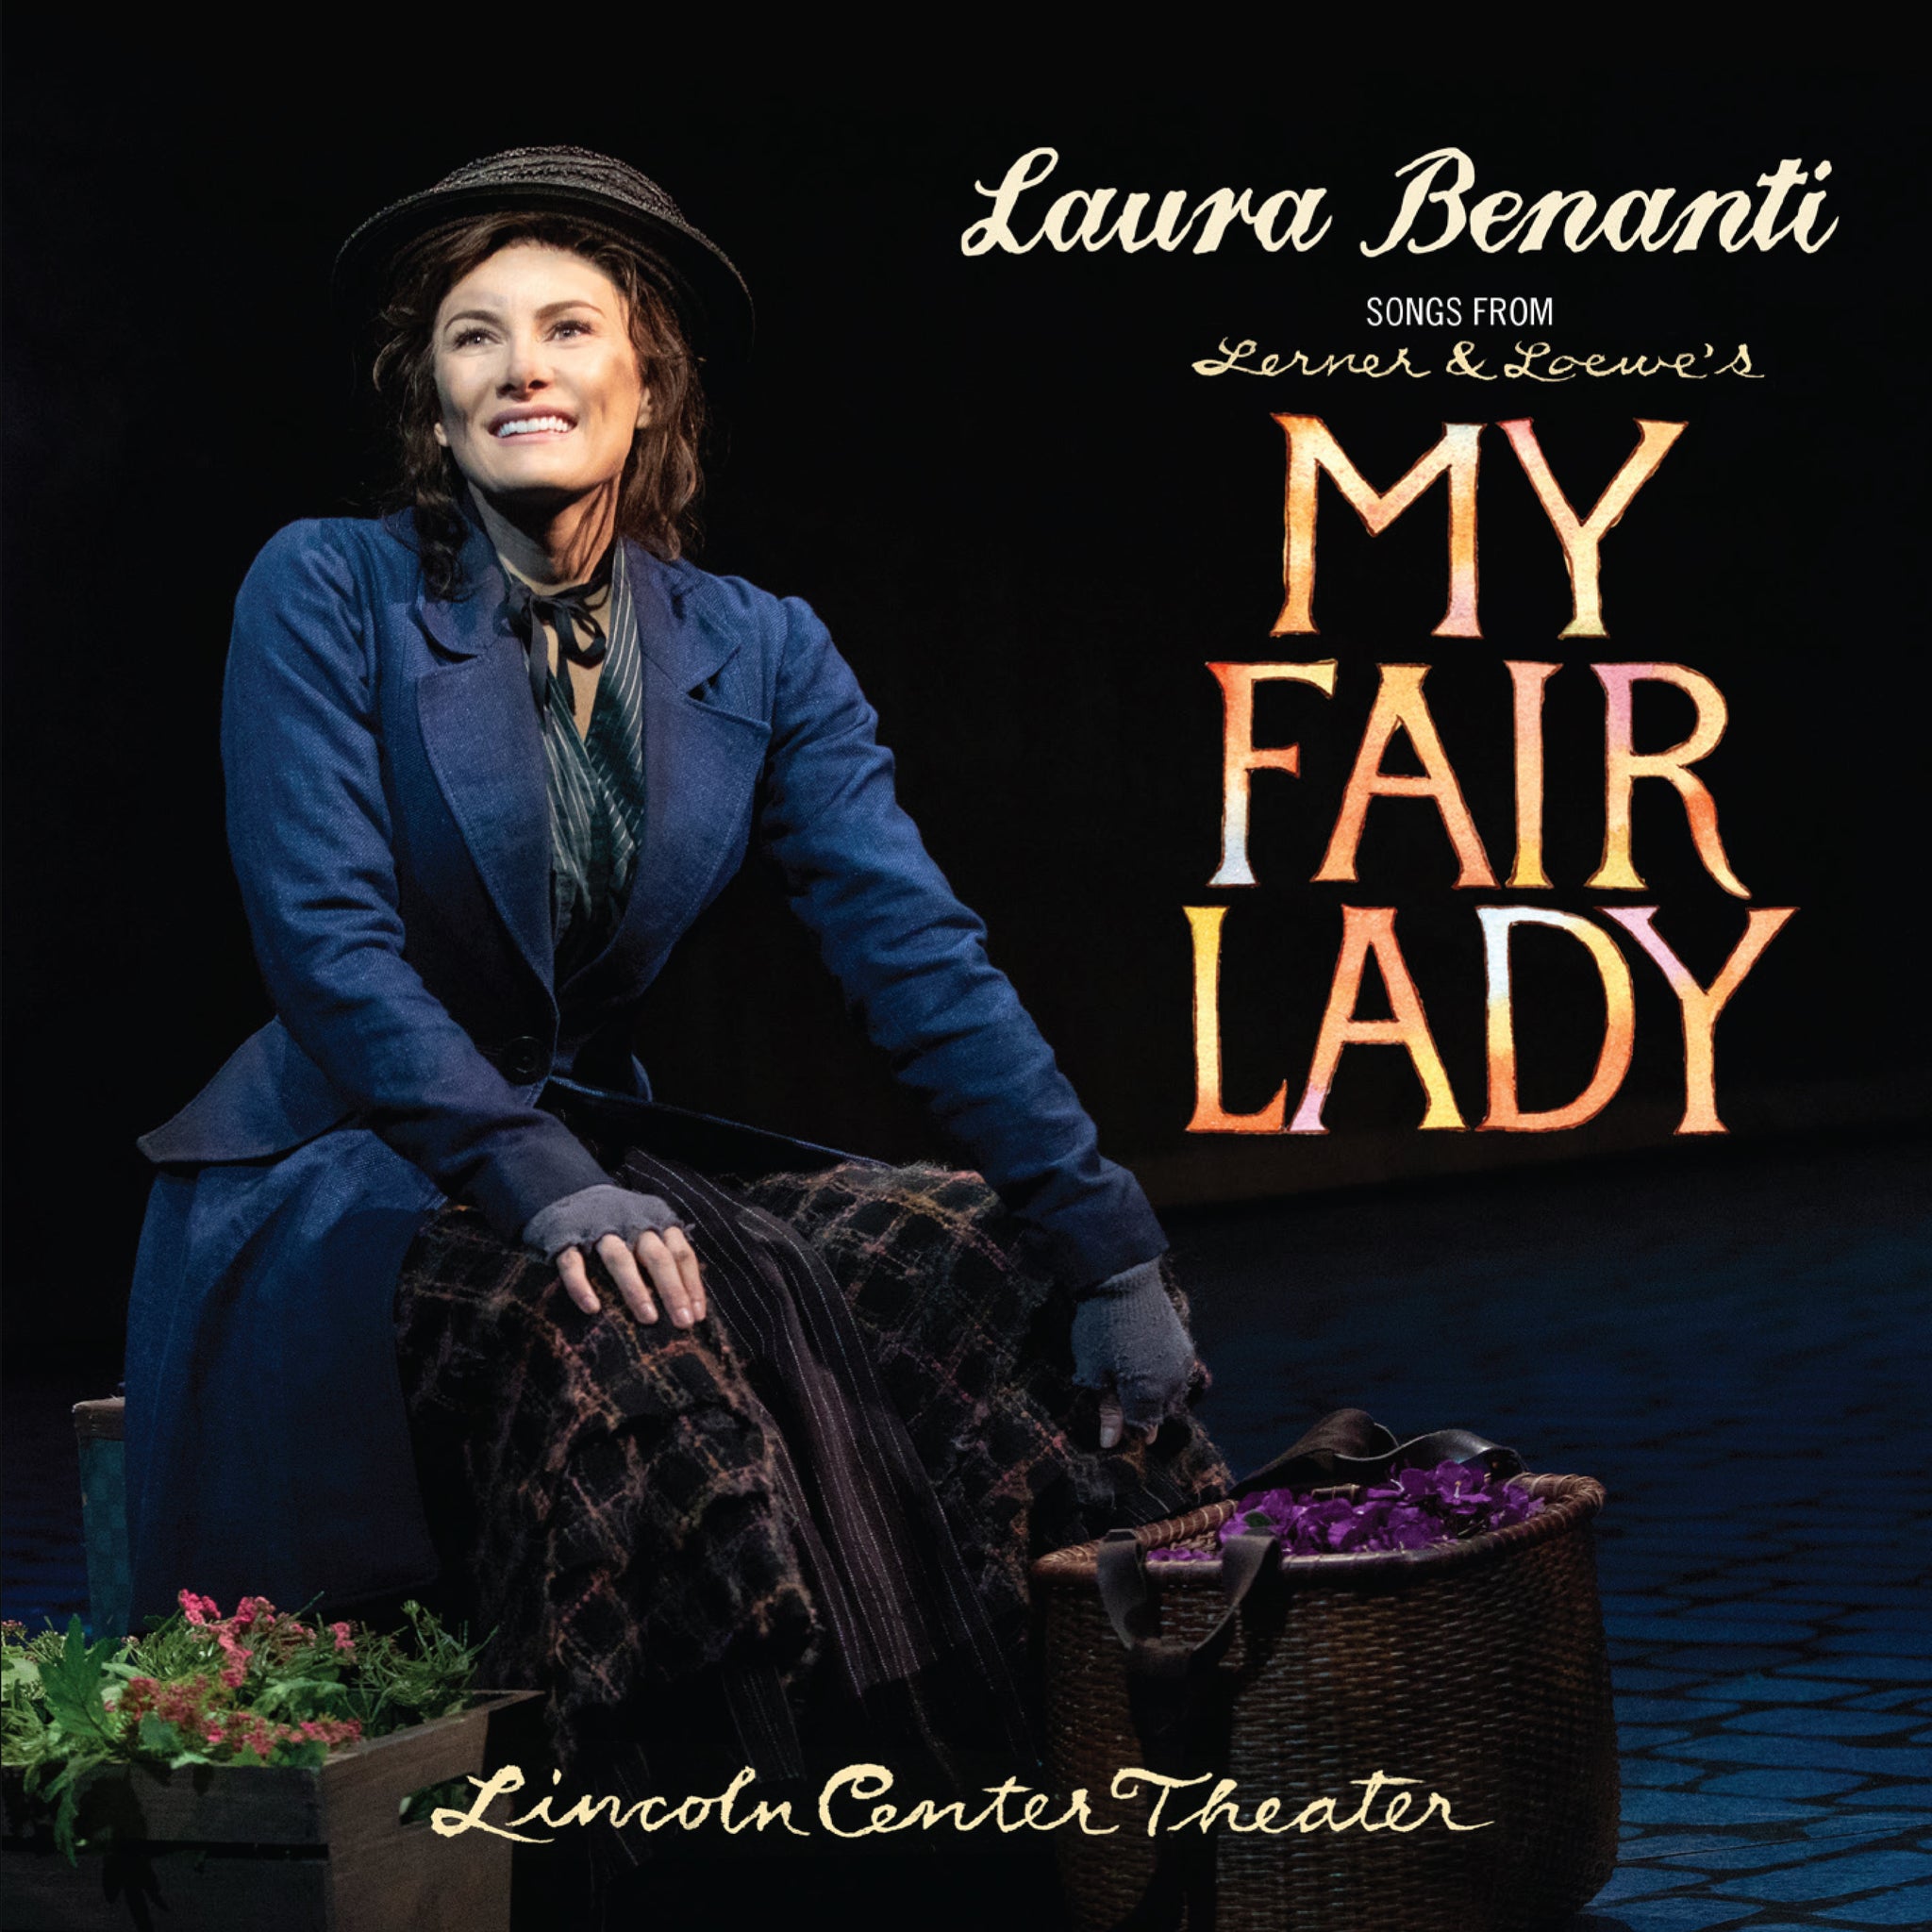 Laura Benanti - Songs from My Fair Lady [CD]